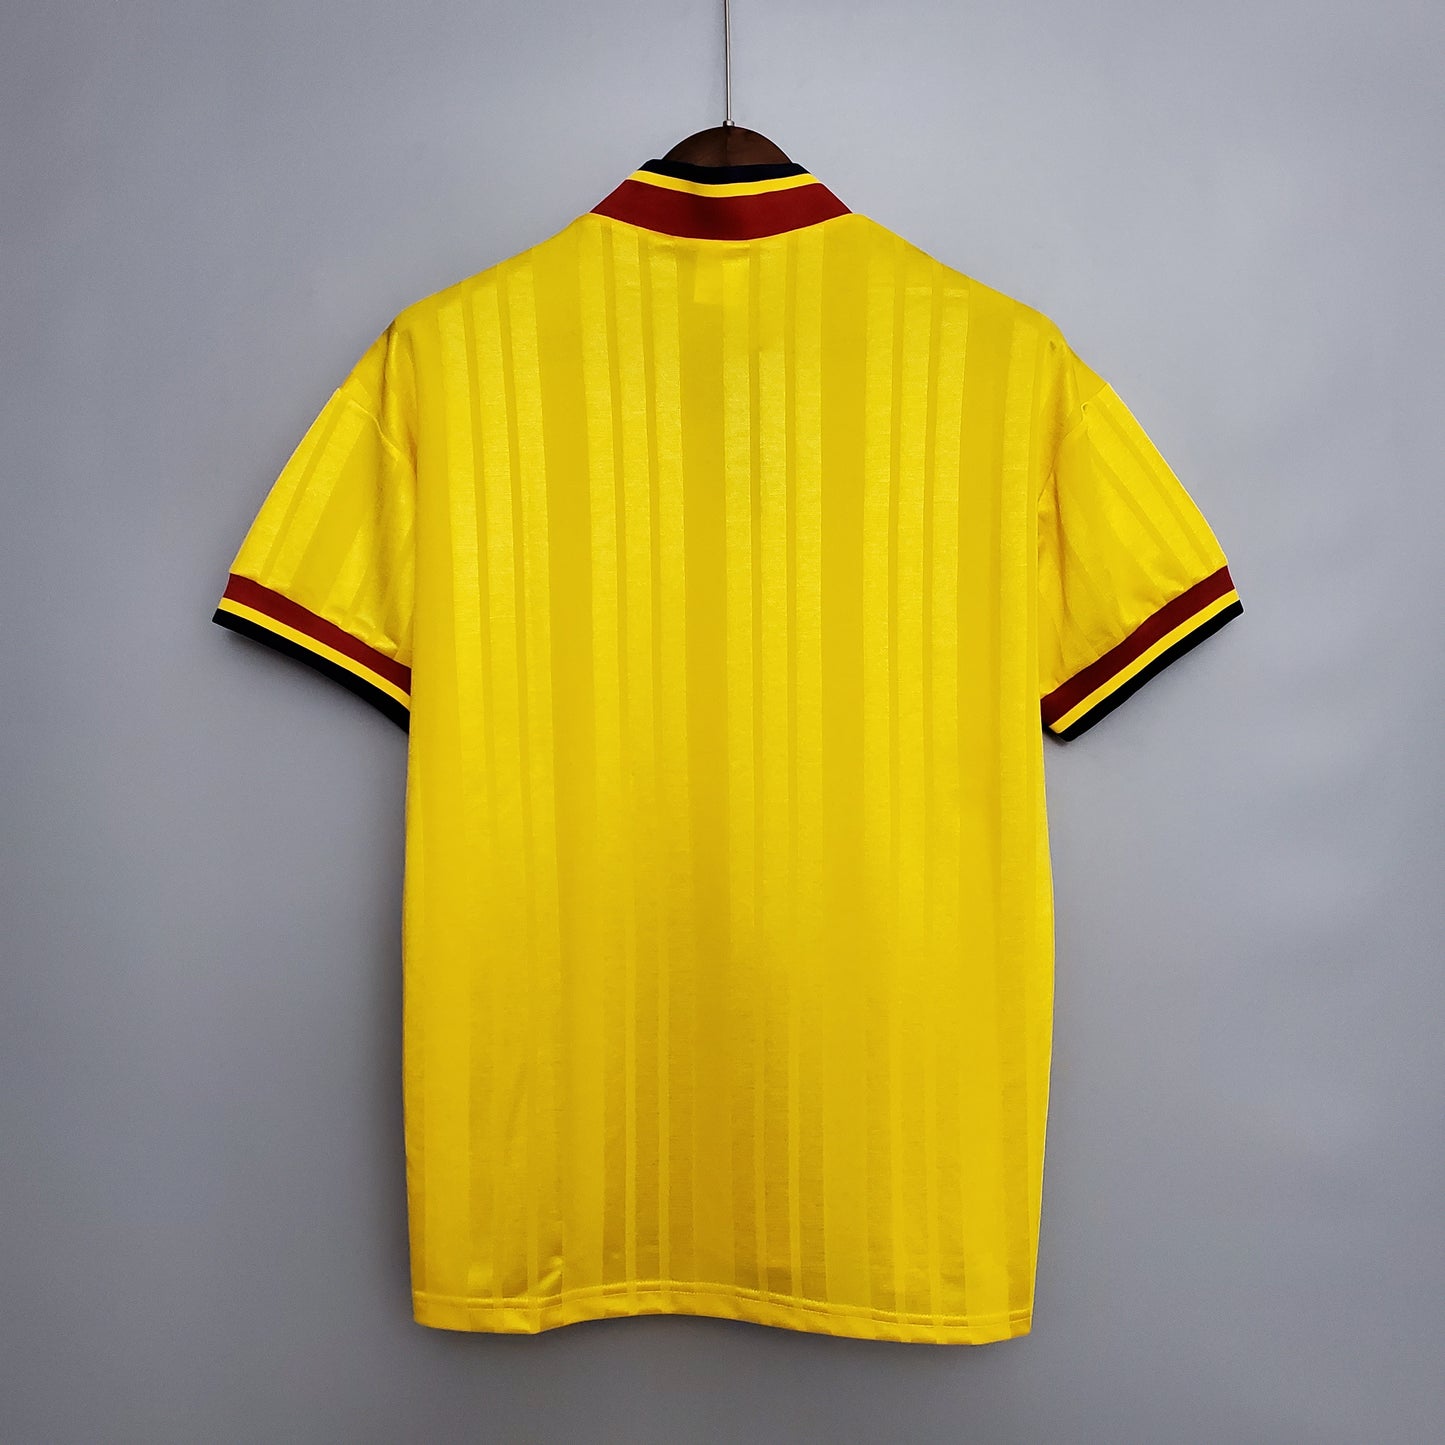 1993/94 Arsenal Away Shirt